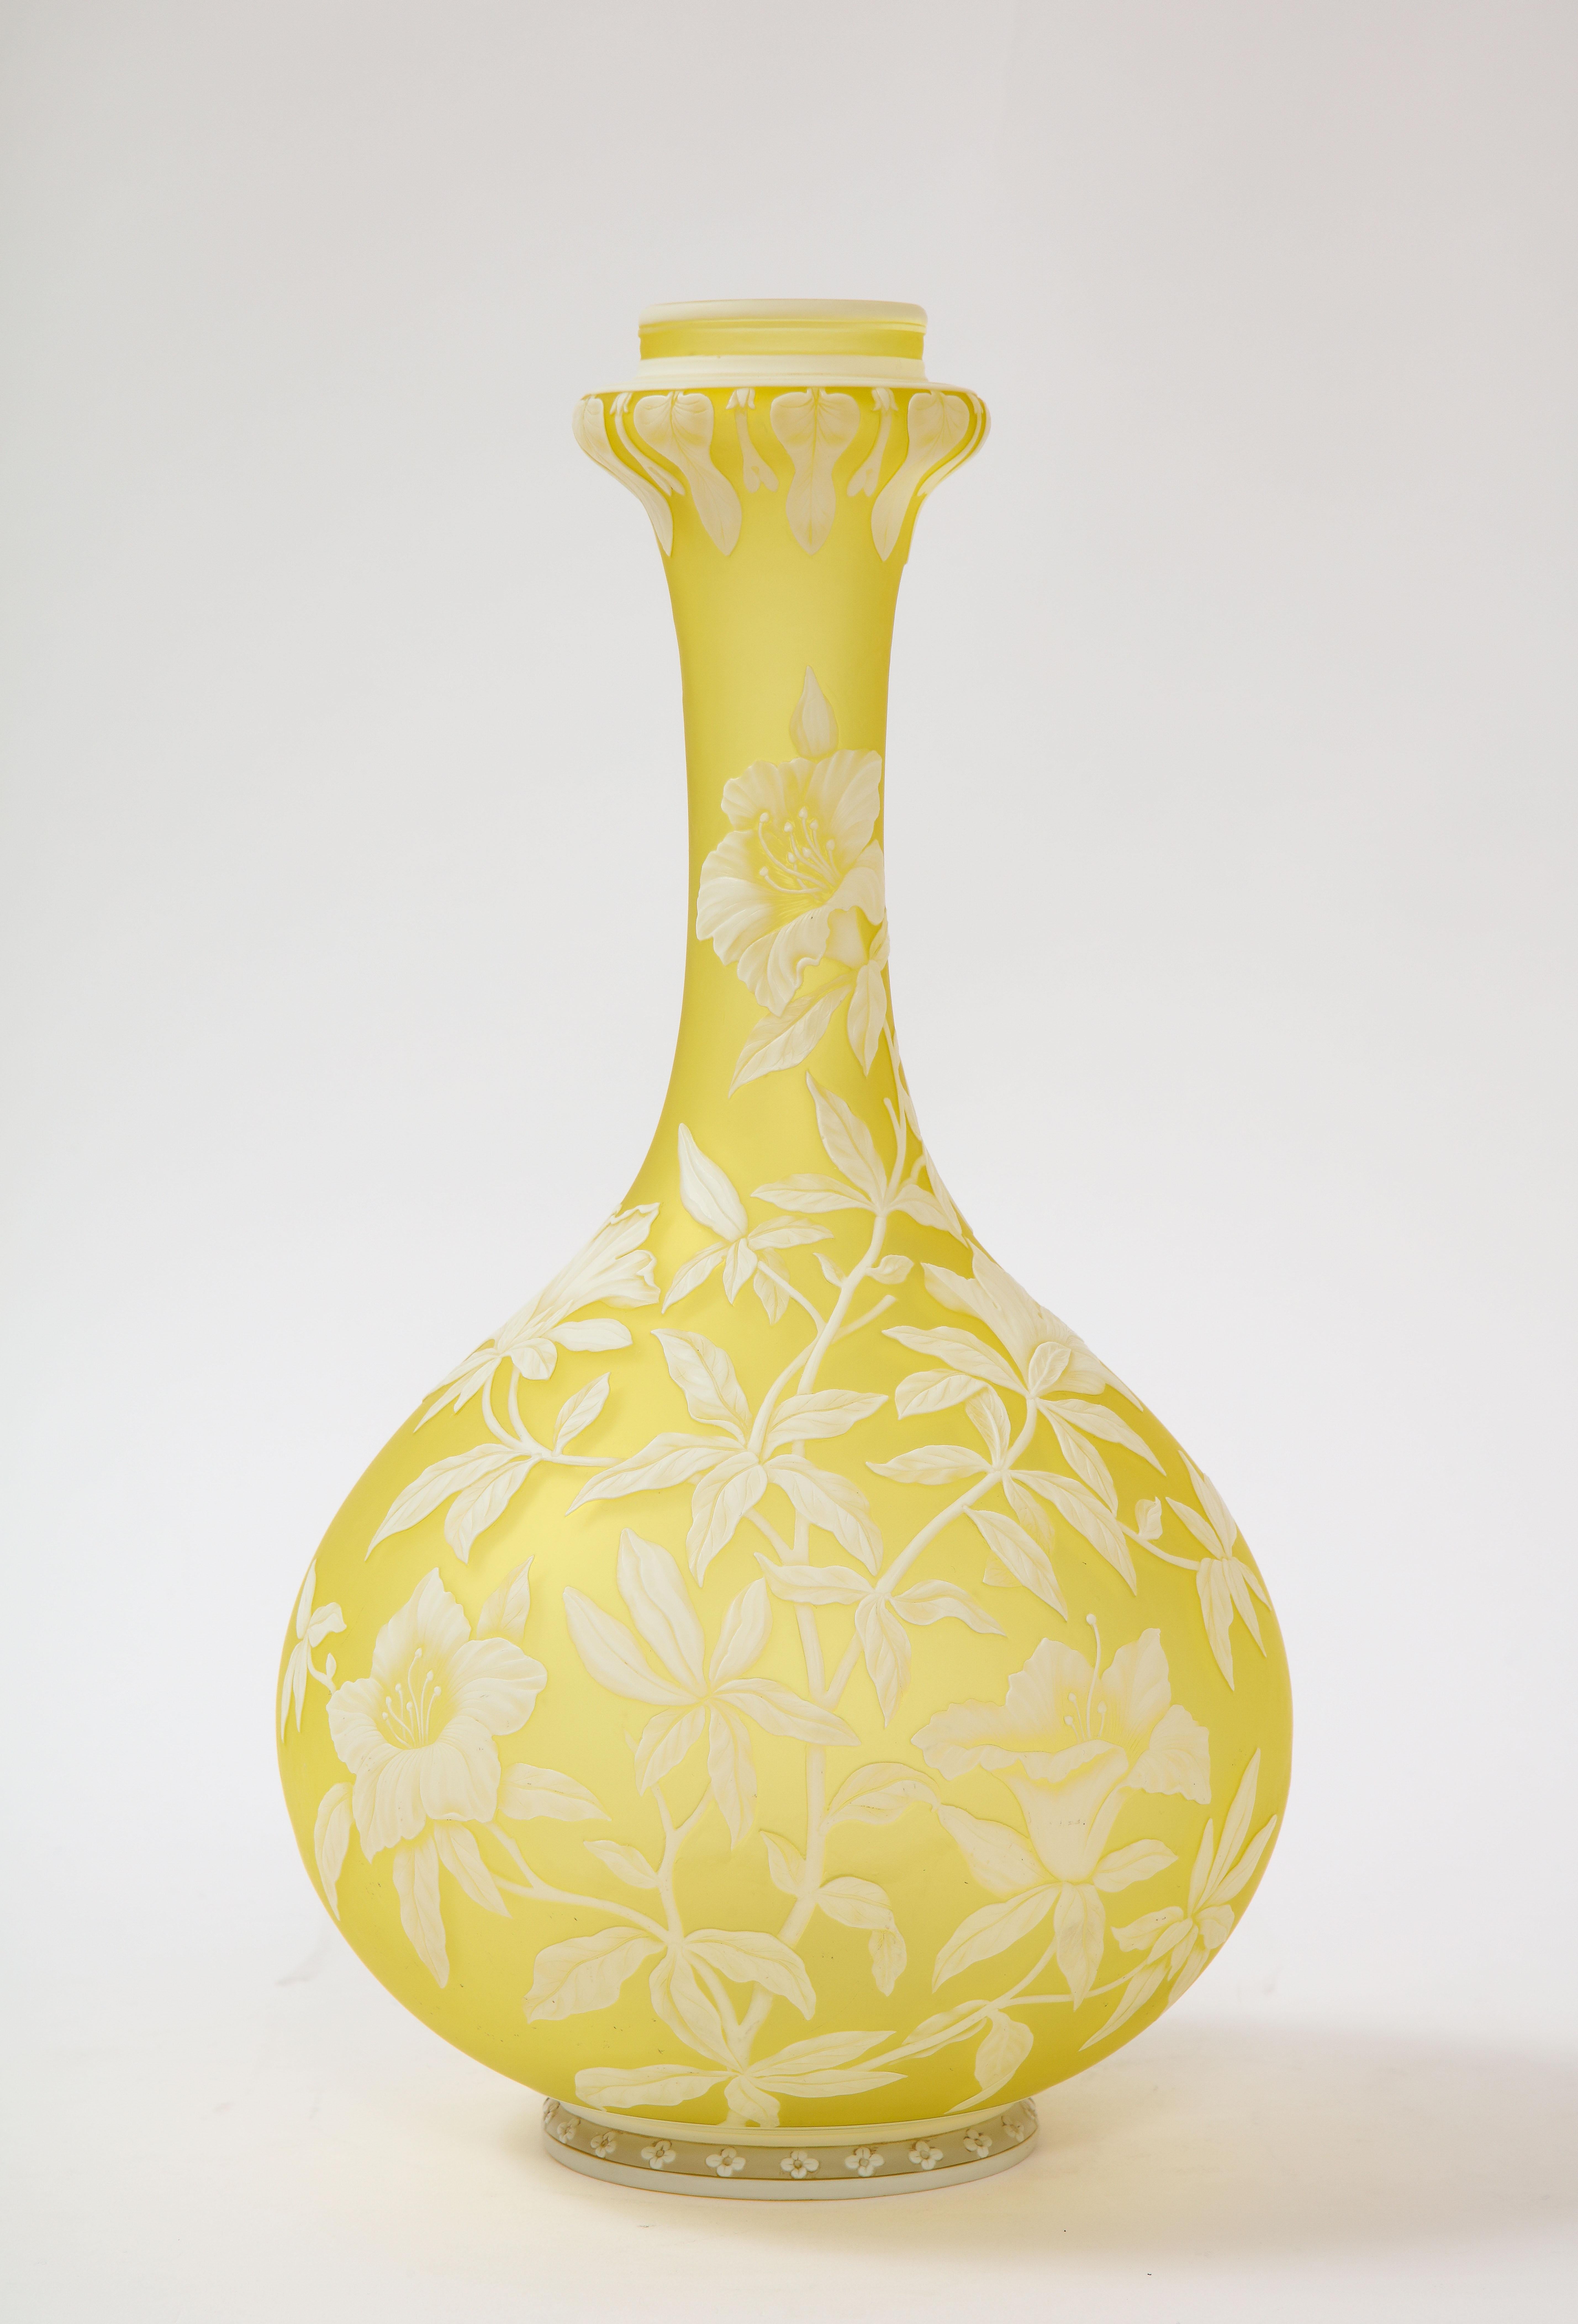 Eine unglaubliche Qualität Thomas Webb & Sons Kamee doppelt überlagert weiß über gelb geätzt und Säure gewaschen Vase. Diese besondere Vase hat einen gelben Grund, in den von Hand weiße Blumen, Blätter und Ranken geschnitzt wurden. Die gesamte Vase